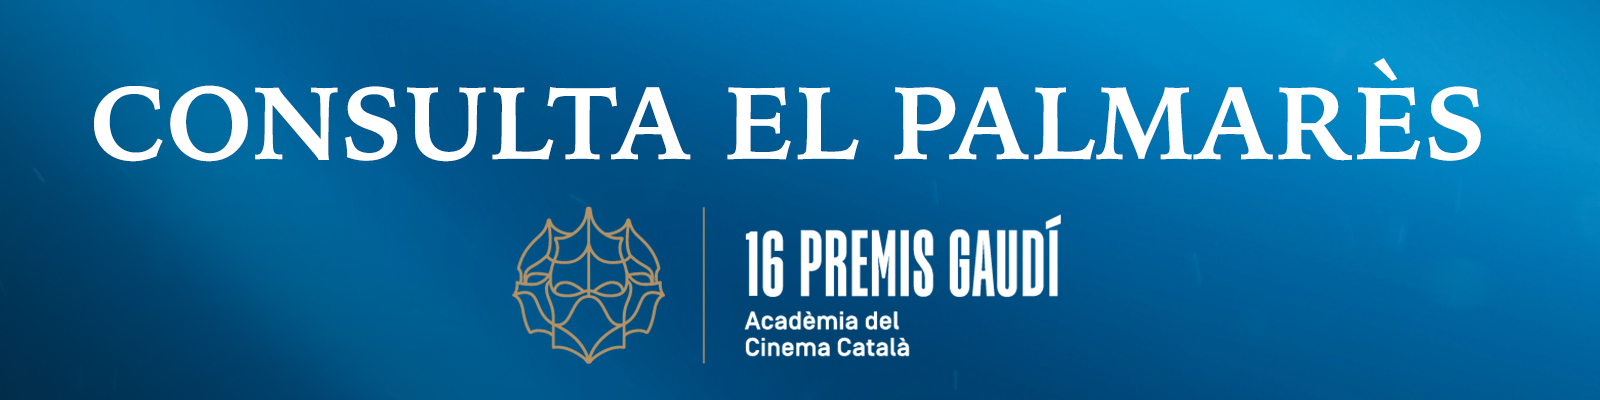 Palmarès 16a edició Premis Gaudí